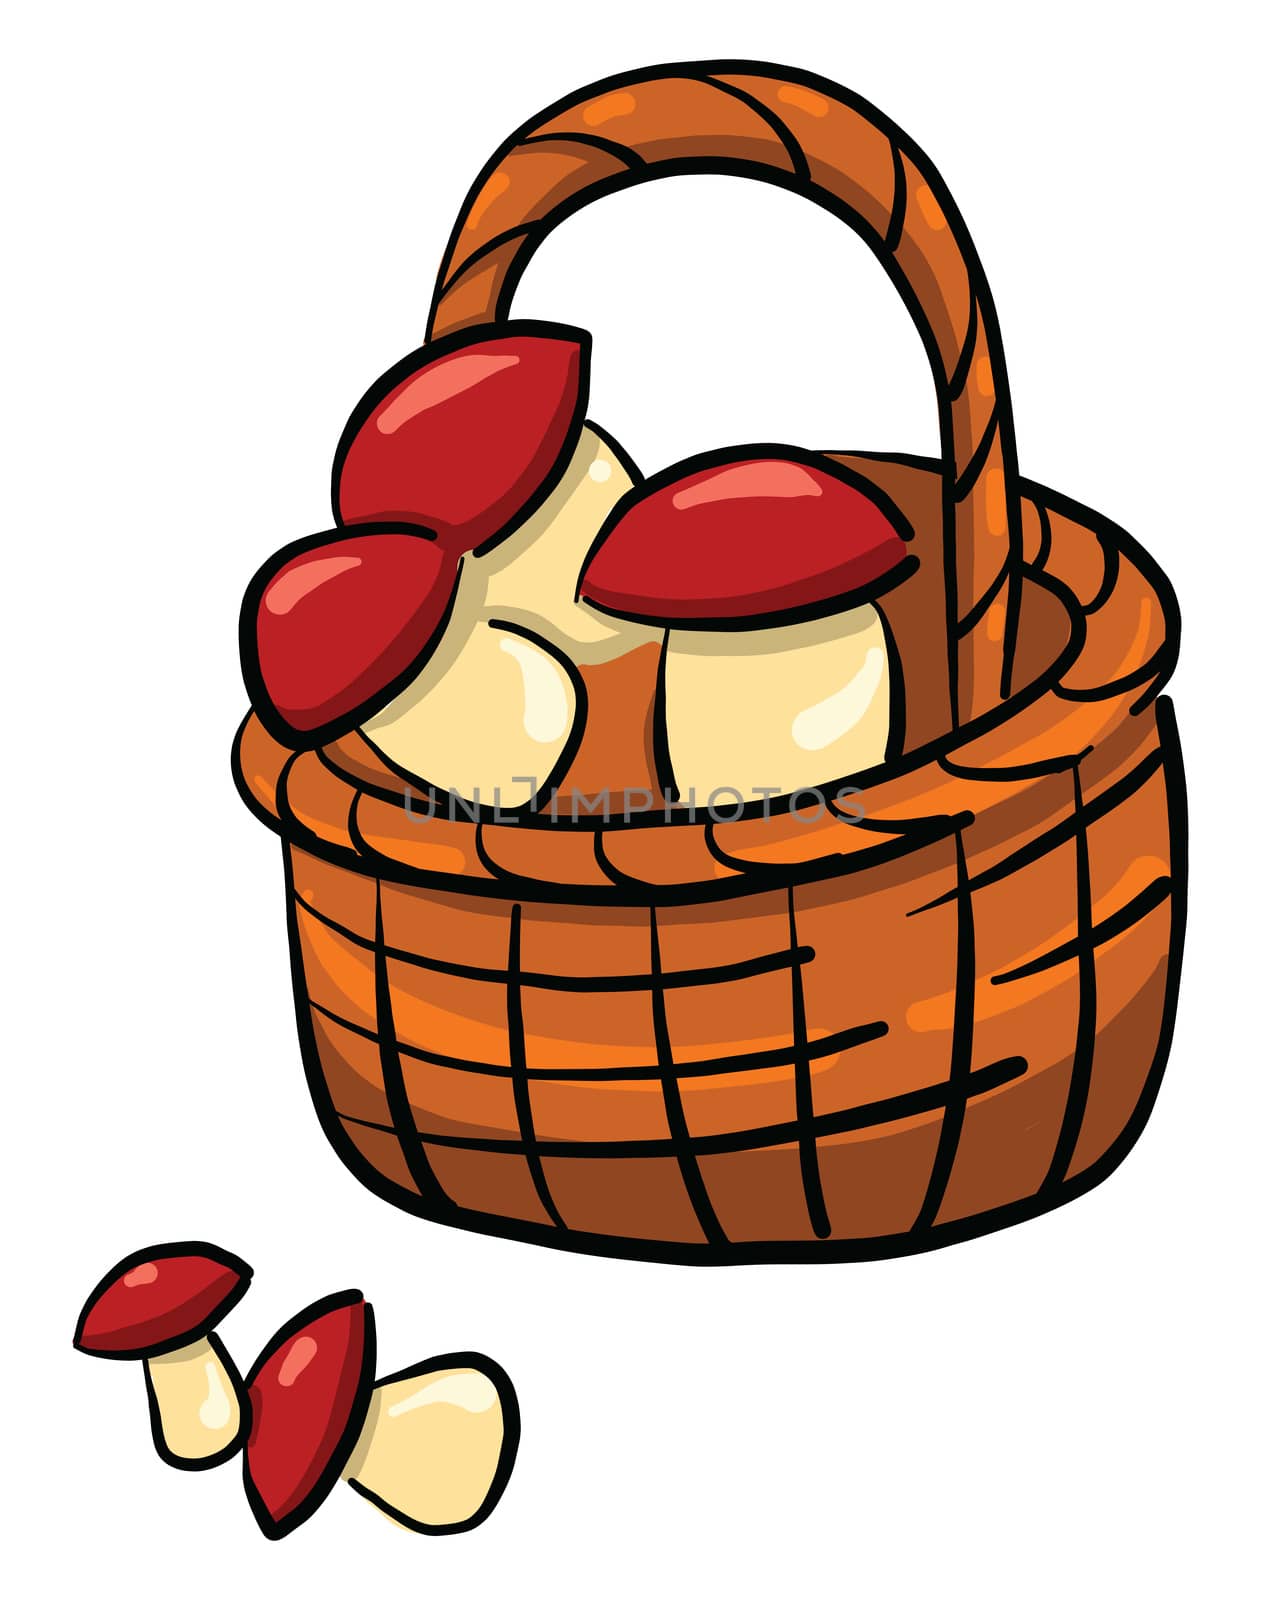 Mushrooms in basket , illustration, vector on white background by Morphart